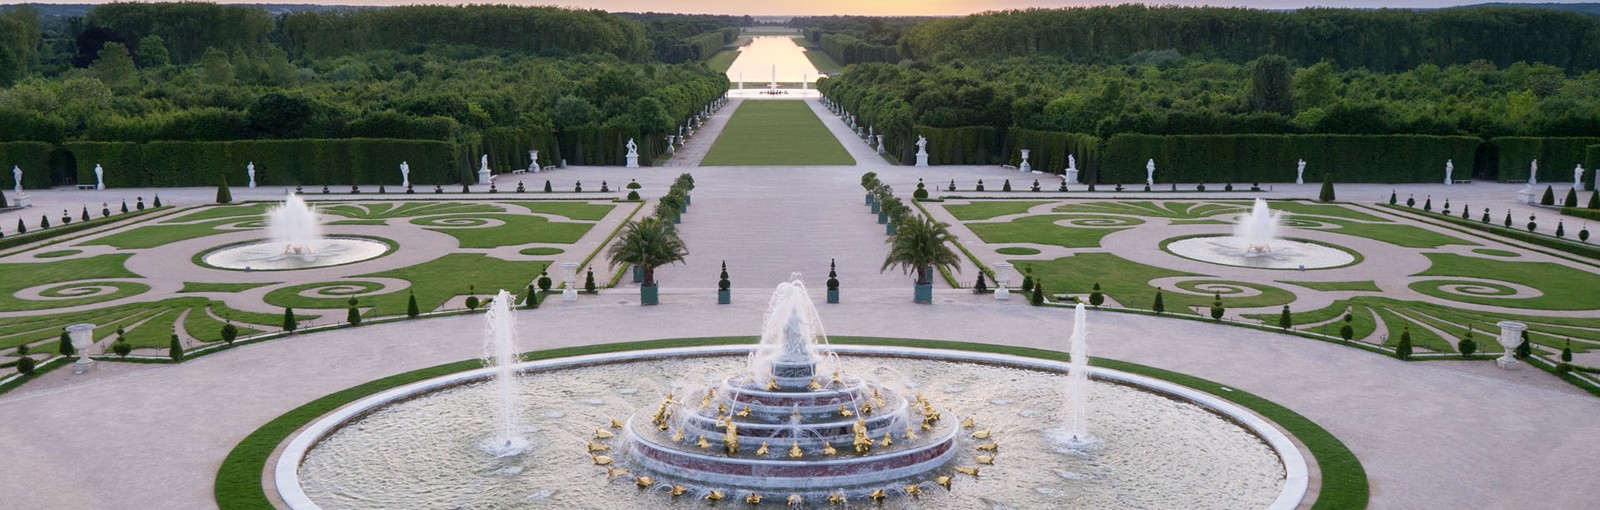 Tours Versalles - Medio-días - Excursiones desde París